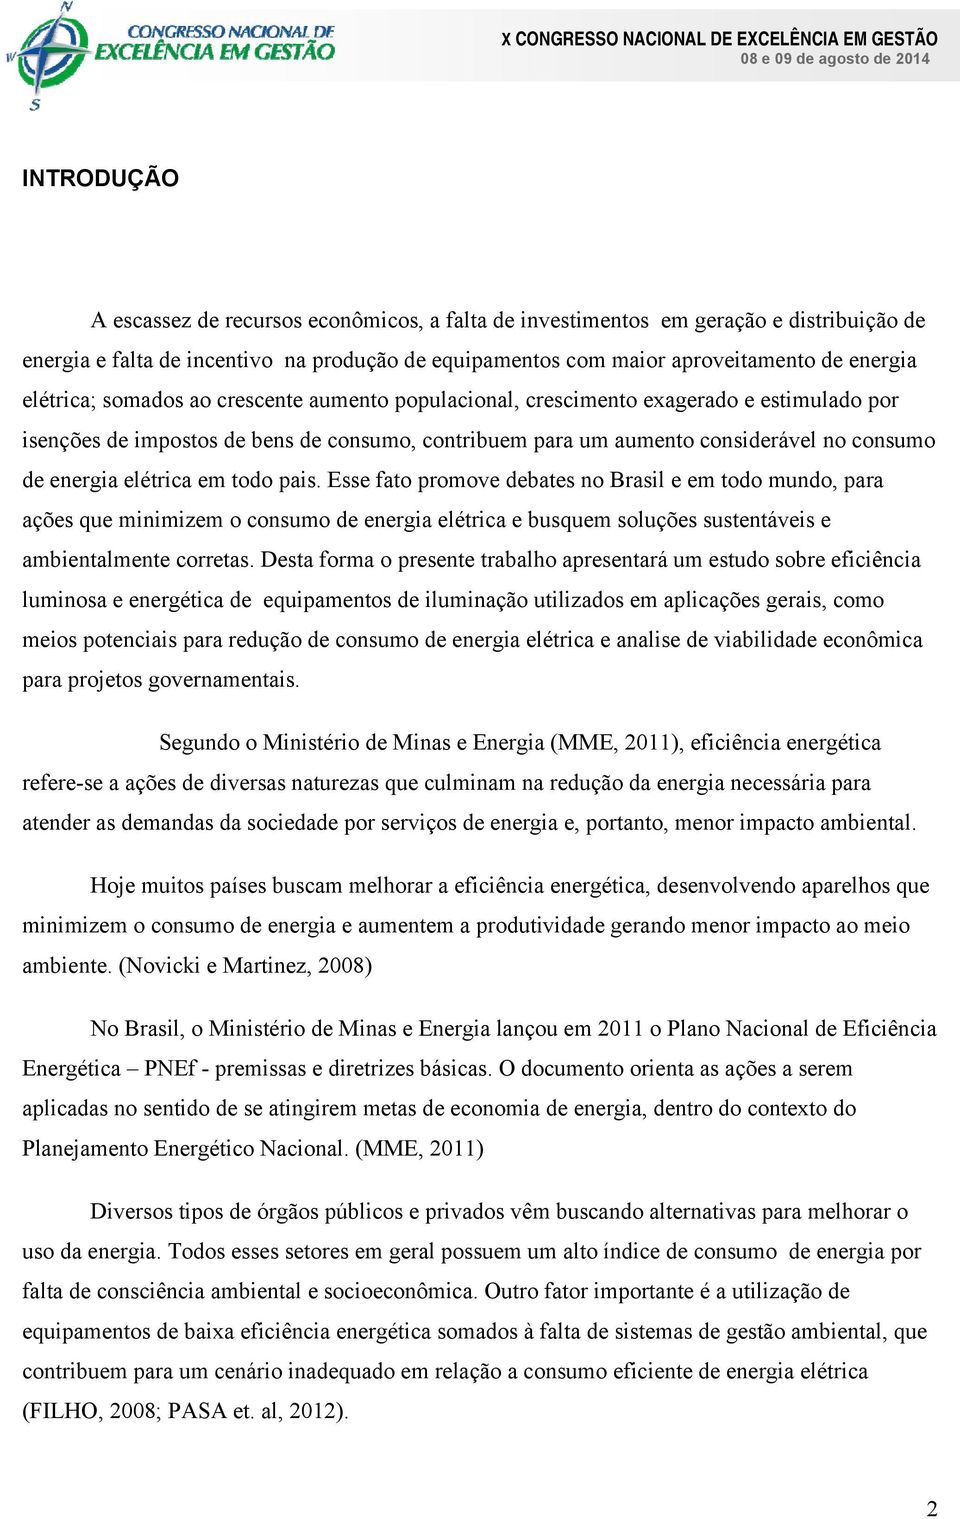 elétrica em todo pais. Esse fato promove debates no Brasil e em todo mundo, para ações que minimizem o consumo de energia elétrica e busquem soluções sustentáveis e ambientalmente corretas.